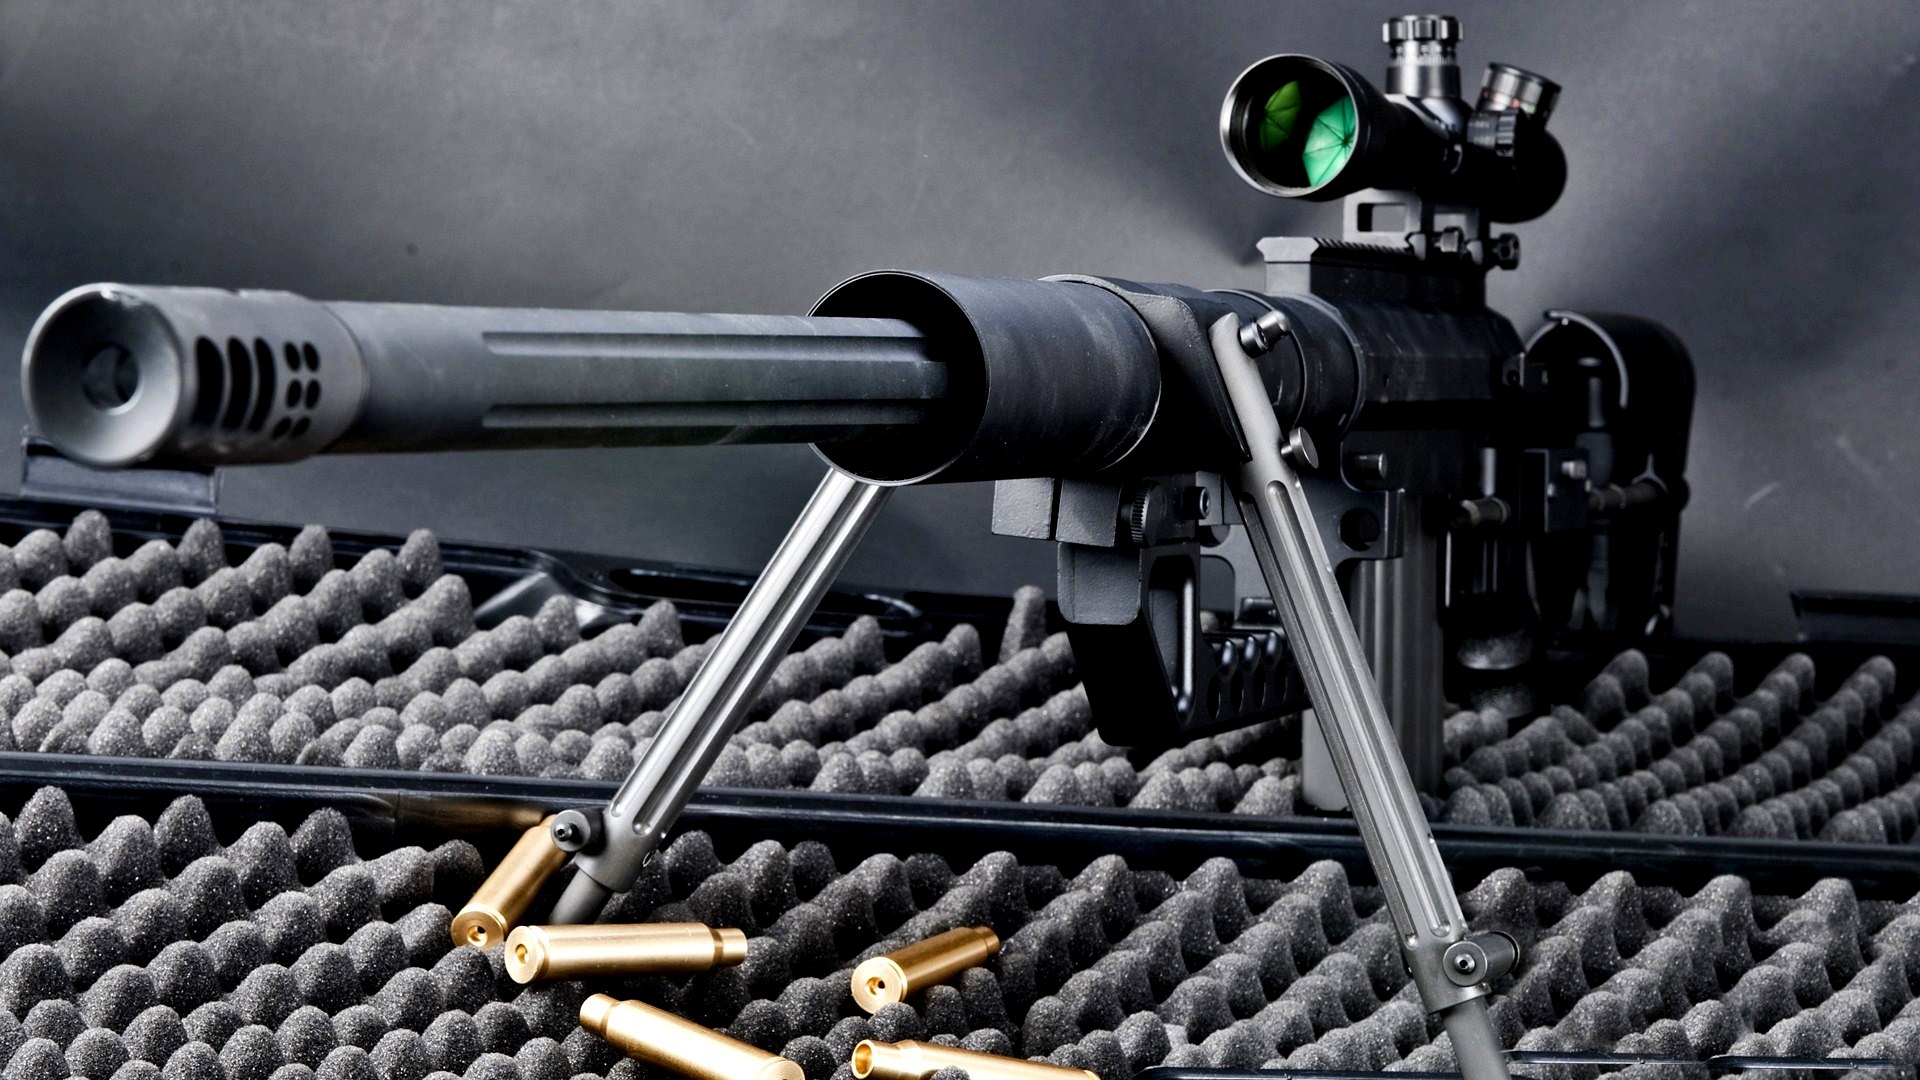 13 HD Sniper Rifle Guns Wallpapers - HDWallSource.com